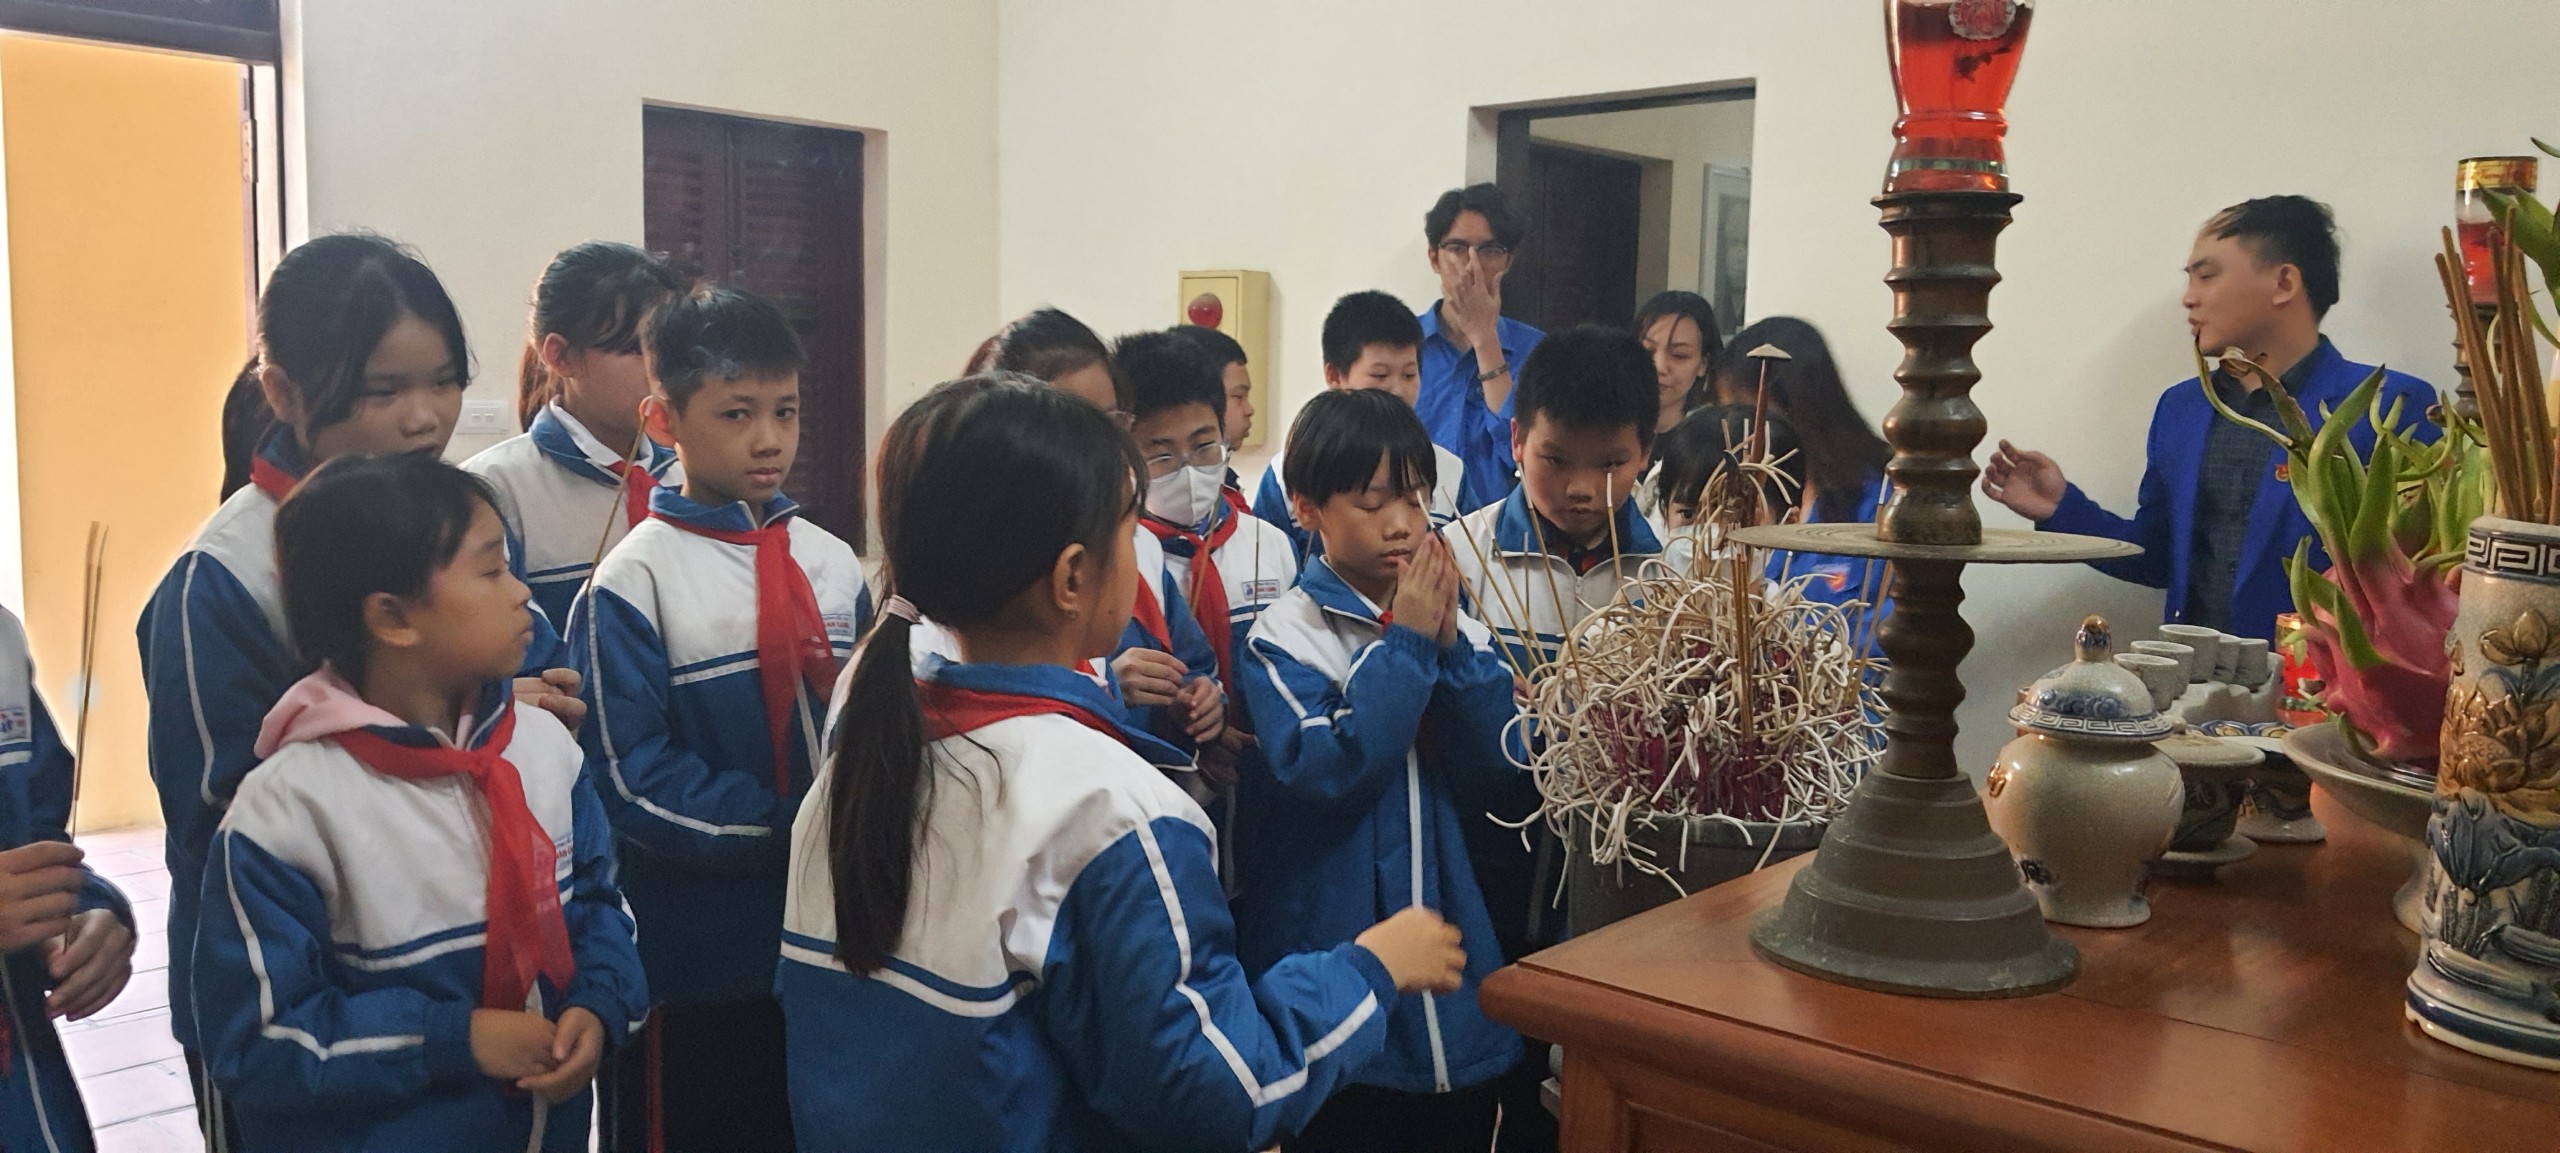 Liên đội trường Tiểu học Vân Canh cùng Đoàn xã tổ chức Lễ dâng hương tại Đài tưởng niệm.